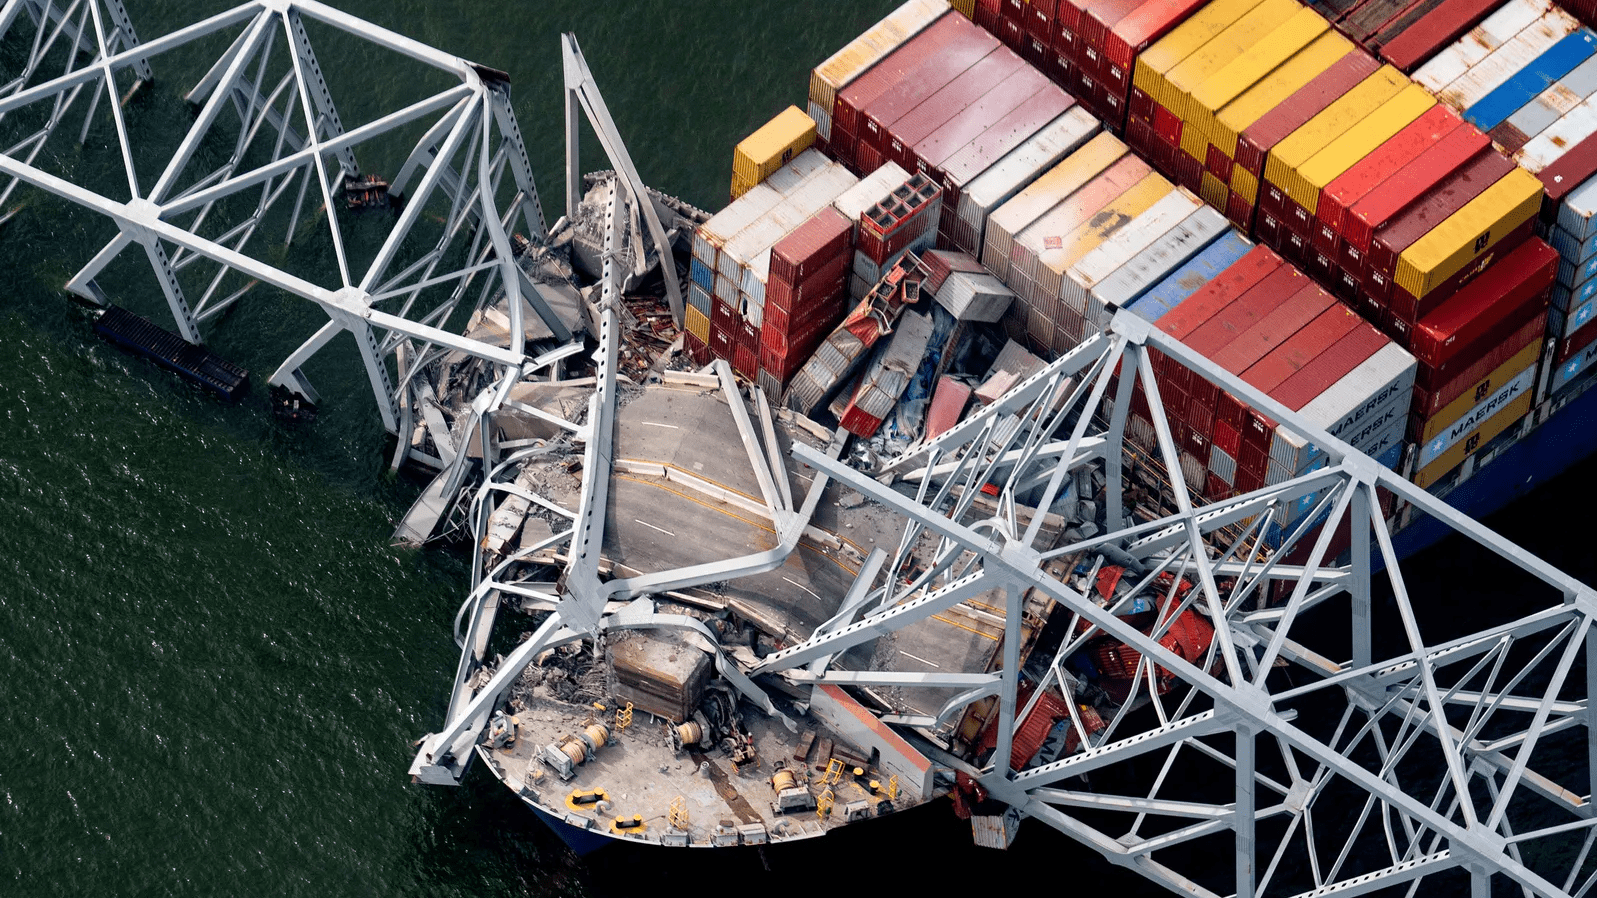 周二凌晨，悬挂新加坡国旗的集装箱船“Dali号”撞上巴尔的摩的弗朗西斯·斯科特·基大桥，导致桥体坍塌。当时正在桥上填埋坑洞的六名建筑工人不幸坠入水中，当局推测他们已经全部遇难。